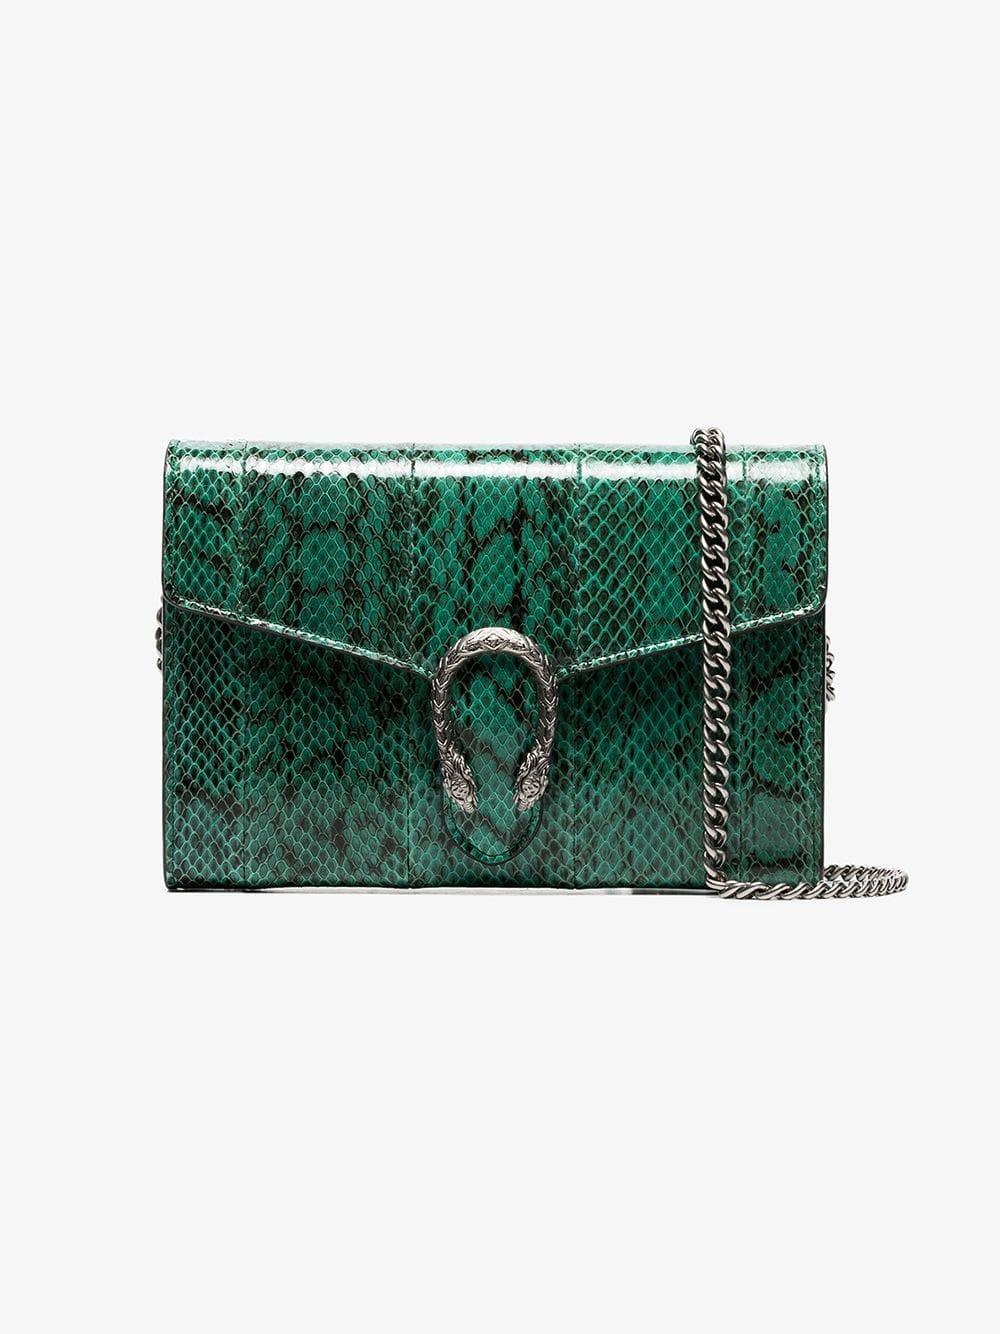 Dionysus Snakeskin Bag in Green - Lyst